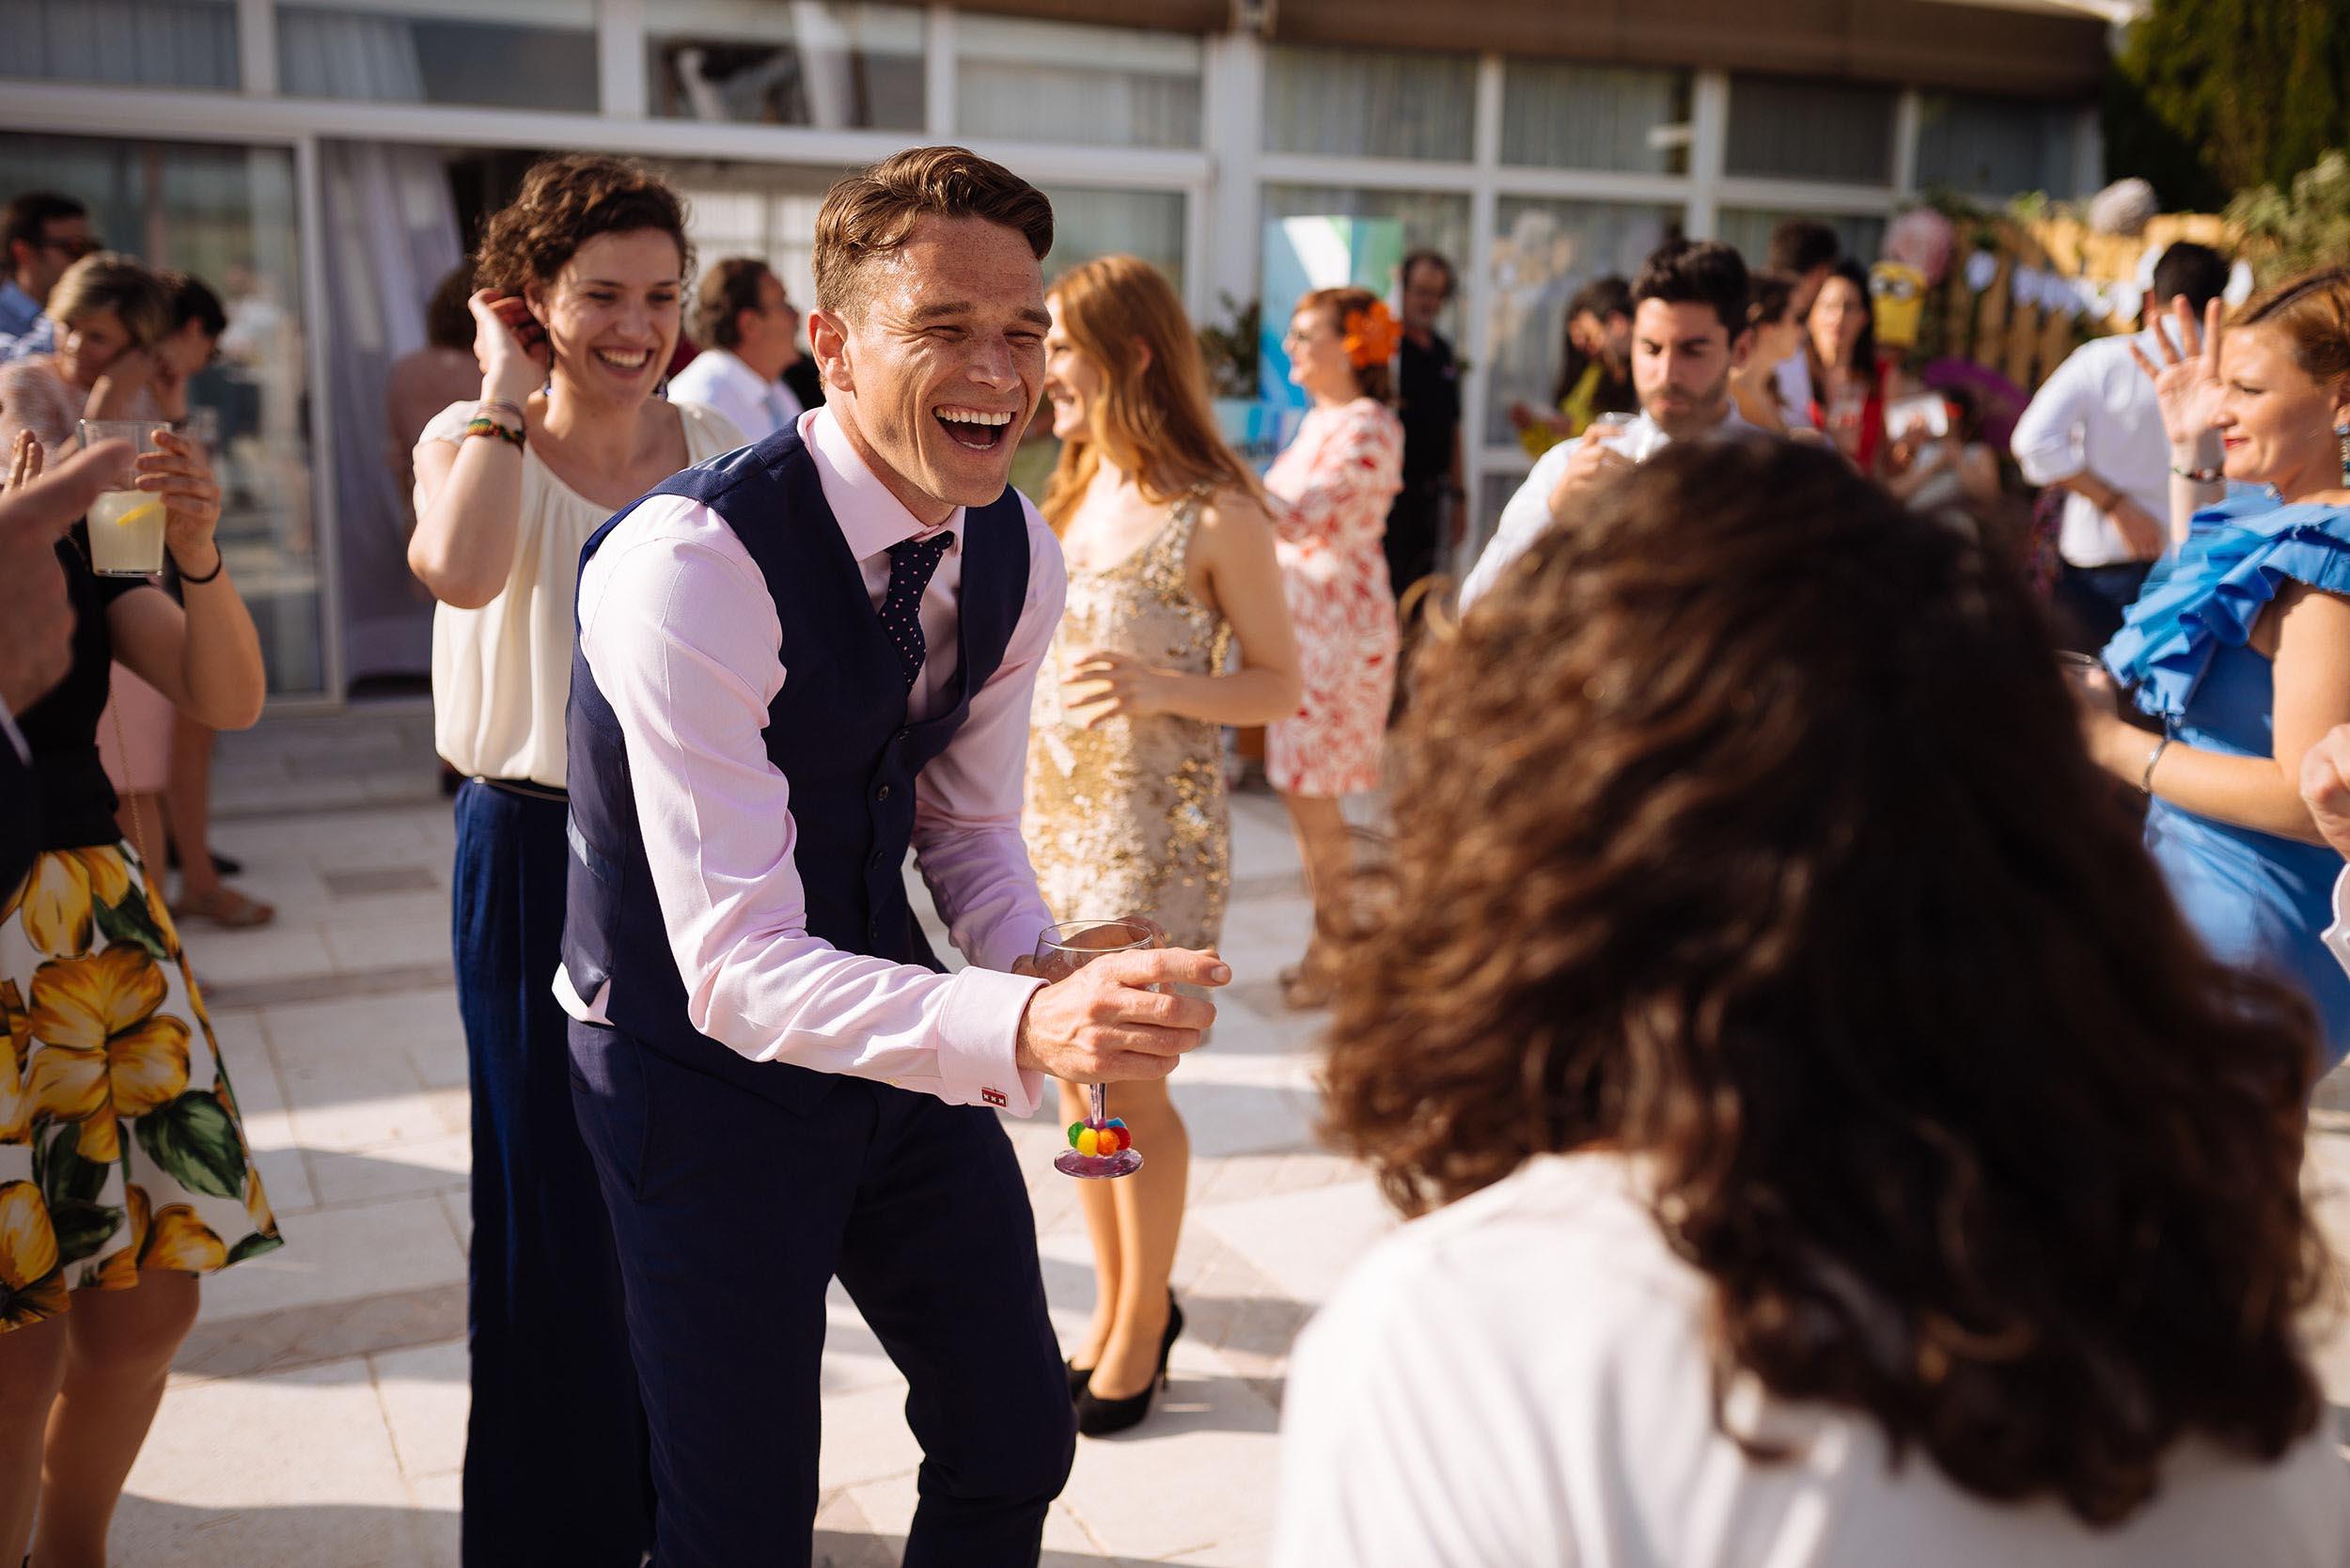 dancefloor-dancing-wedding-day-outdoor-venue-london-photographer